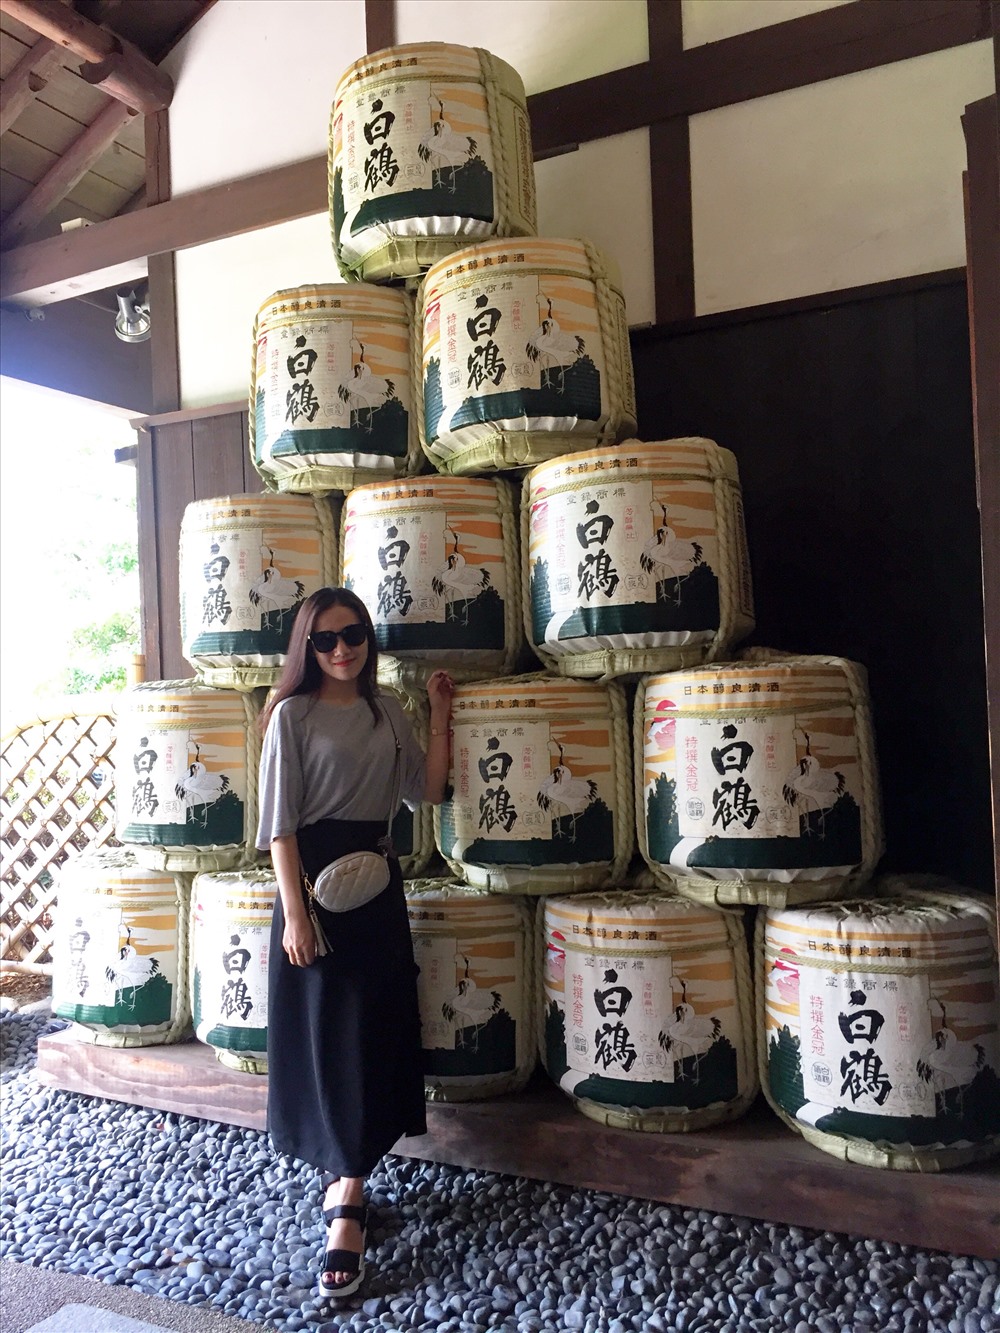 Tại đây có Bảo tàng nhà máy rượu Sake Hakutsuru, nơi trưng bày nhiều dòng sản phẩm rượu sake cùng với nhiều thông tin thú vị về quy trình làm rượu sake ở Nhật Bản. Bảo tàng rượu sake này được đánh giá đóng vai trò quan trọng trong nền văn hóa Nhật Bản bởi rượu sake là dòng đồ uống không thể thiếu trong mọi lễ hội, là thức uống thông dụng của nhiều gia đình trên toàn nước Nhật. Ảnh: Linh Gooner